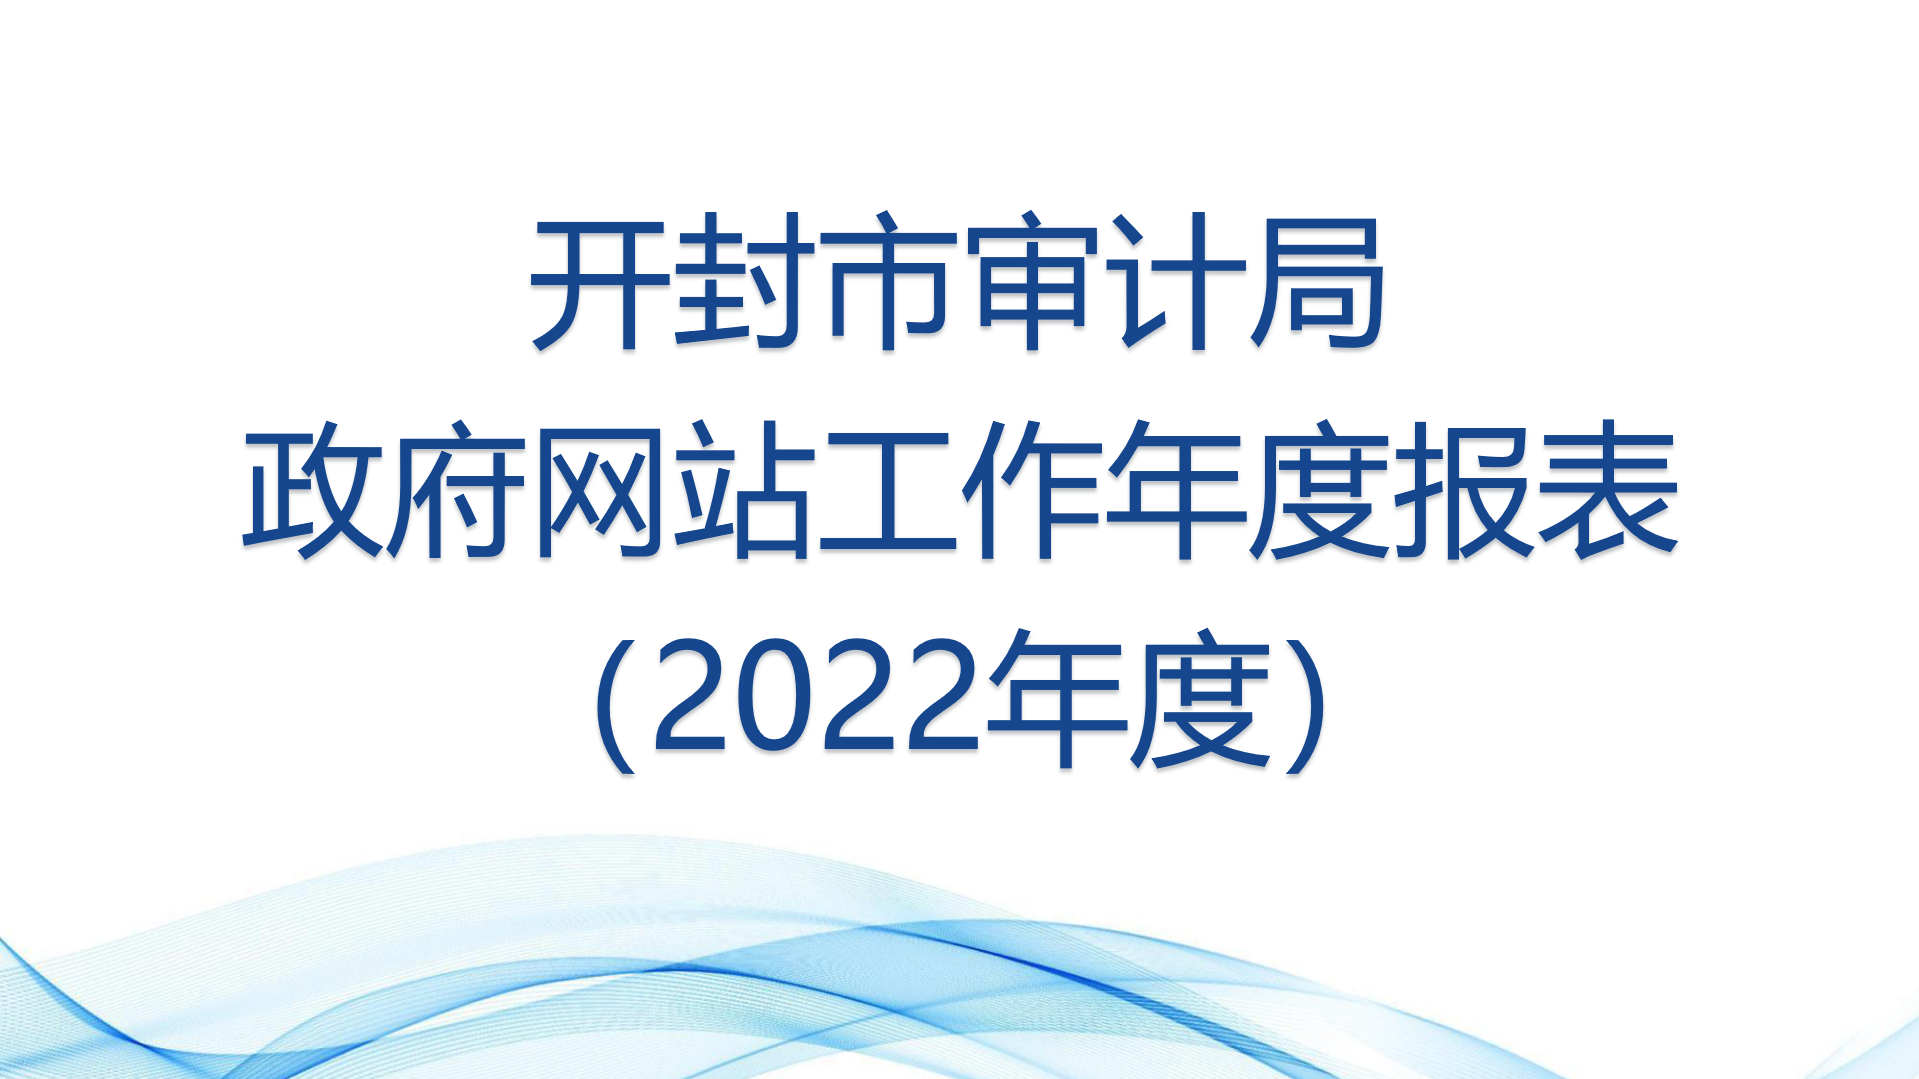 政府网站工作2022年度报表